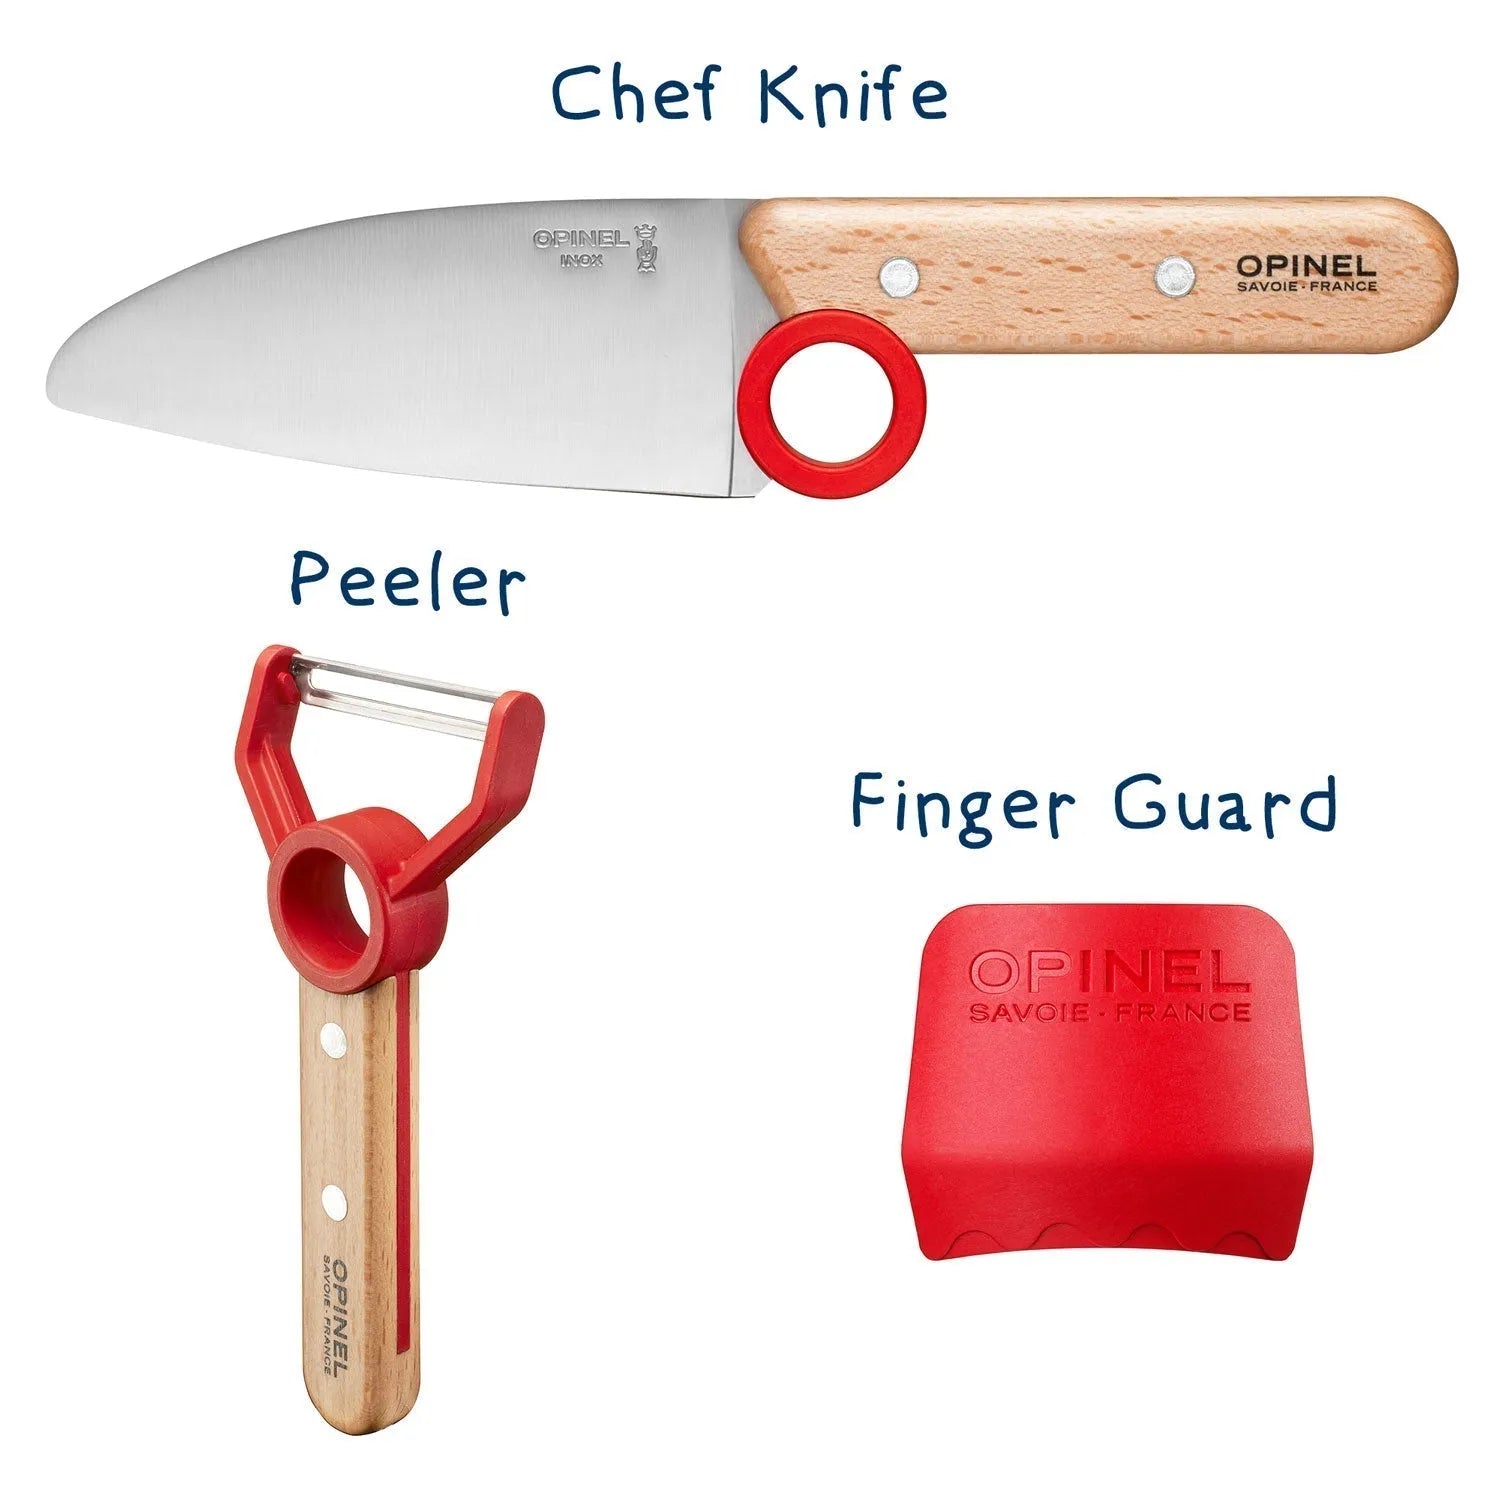 Opinel - Coffret Le Petit Chef (couteau+protège doigt+éplucheur) - rouge    - Opinel - Couteau de cuisine - 